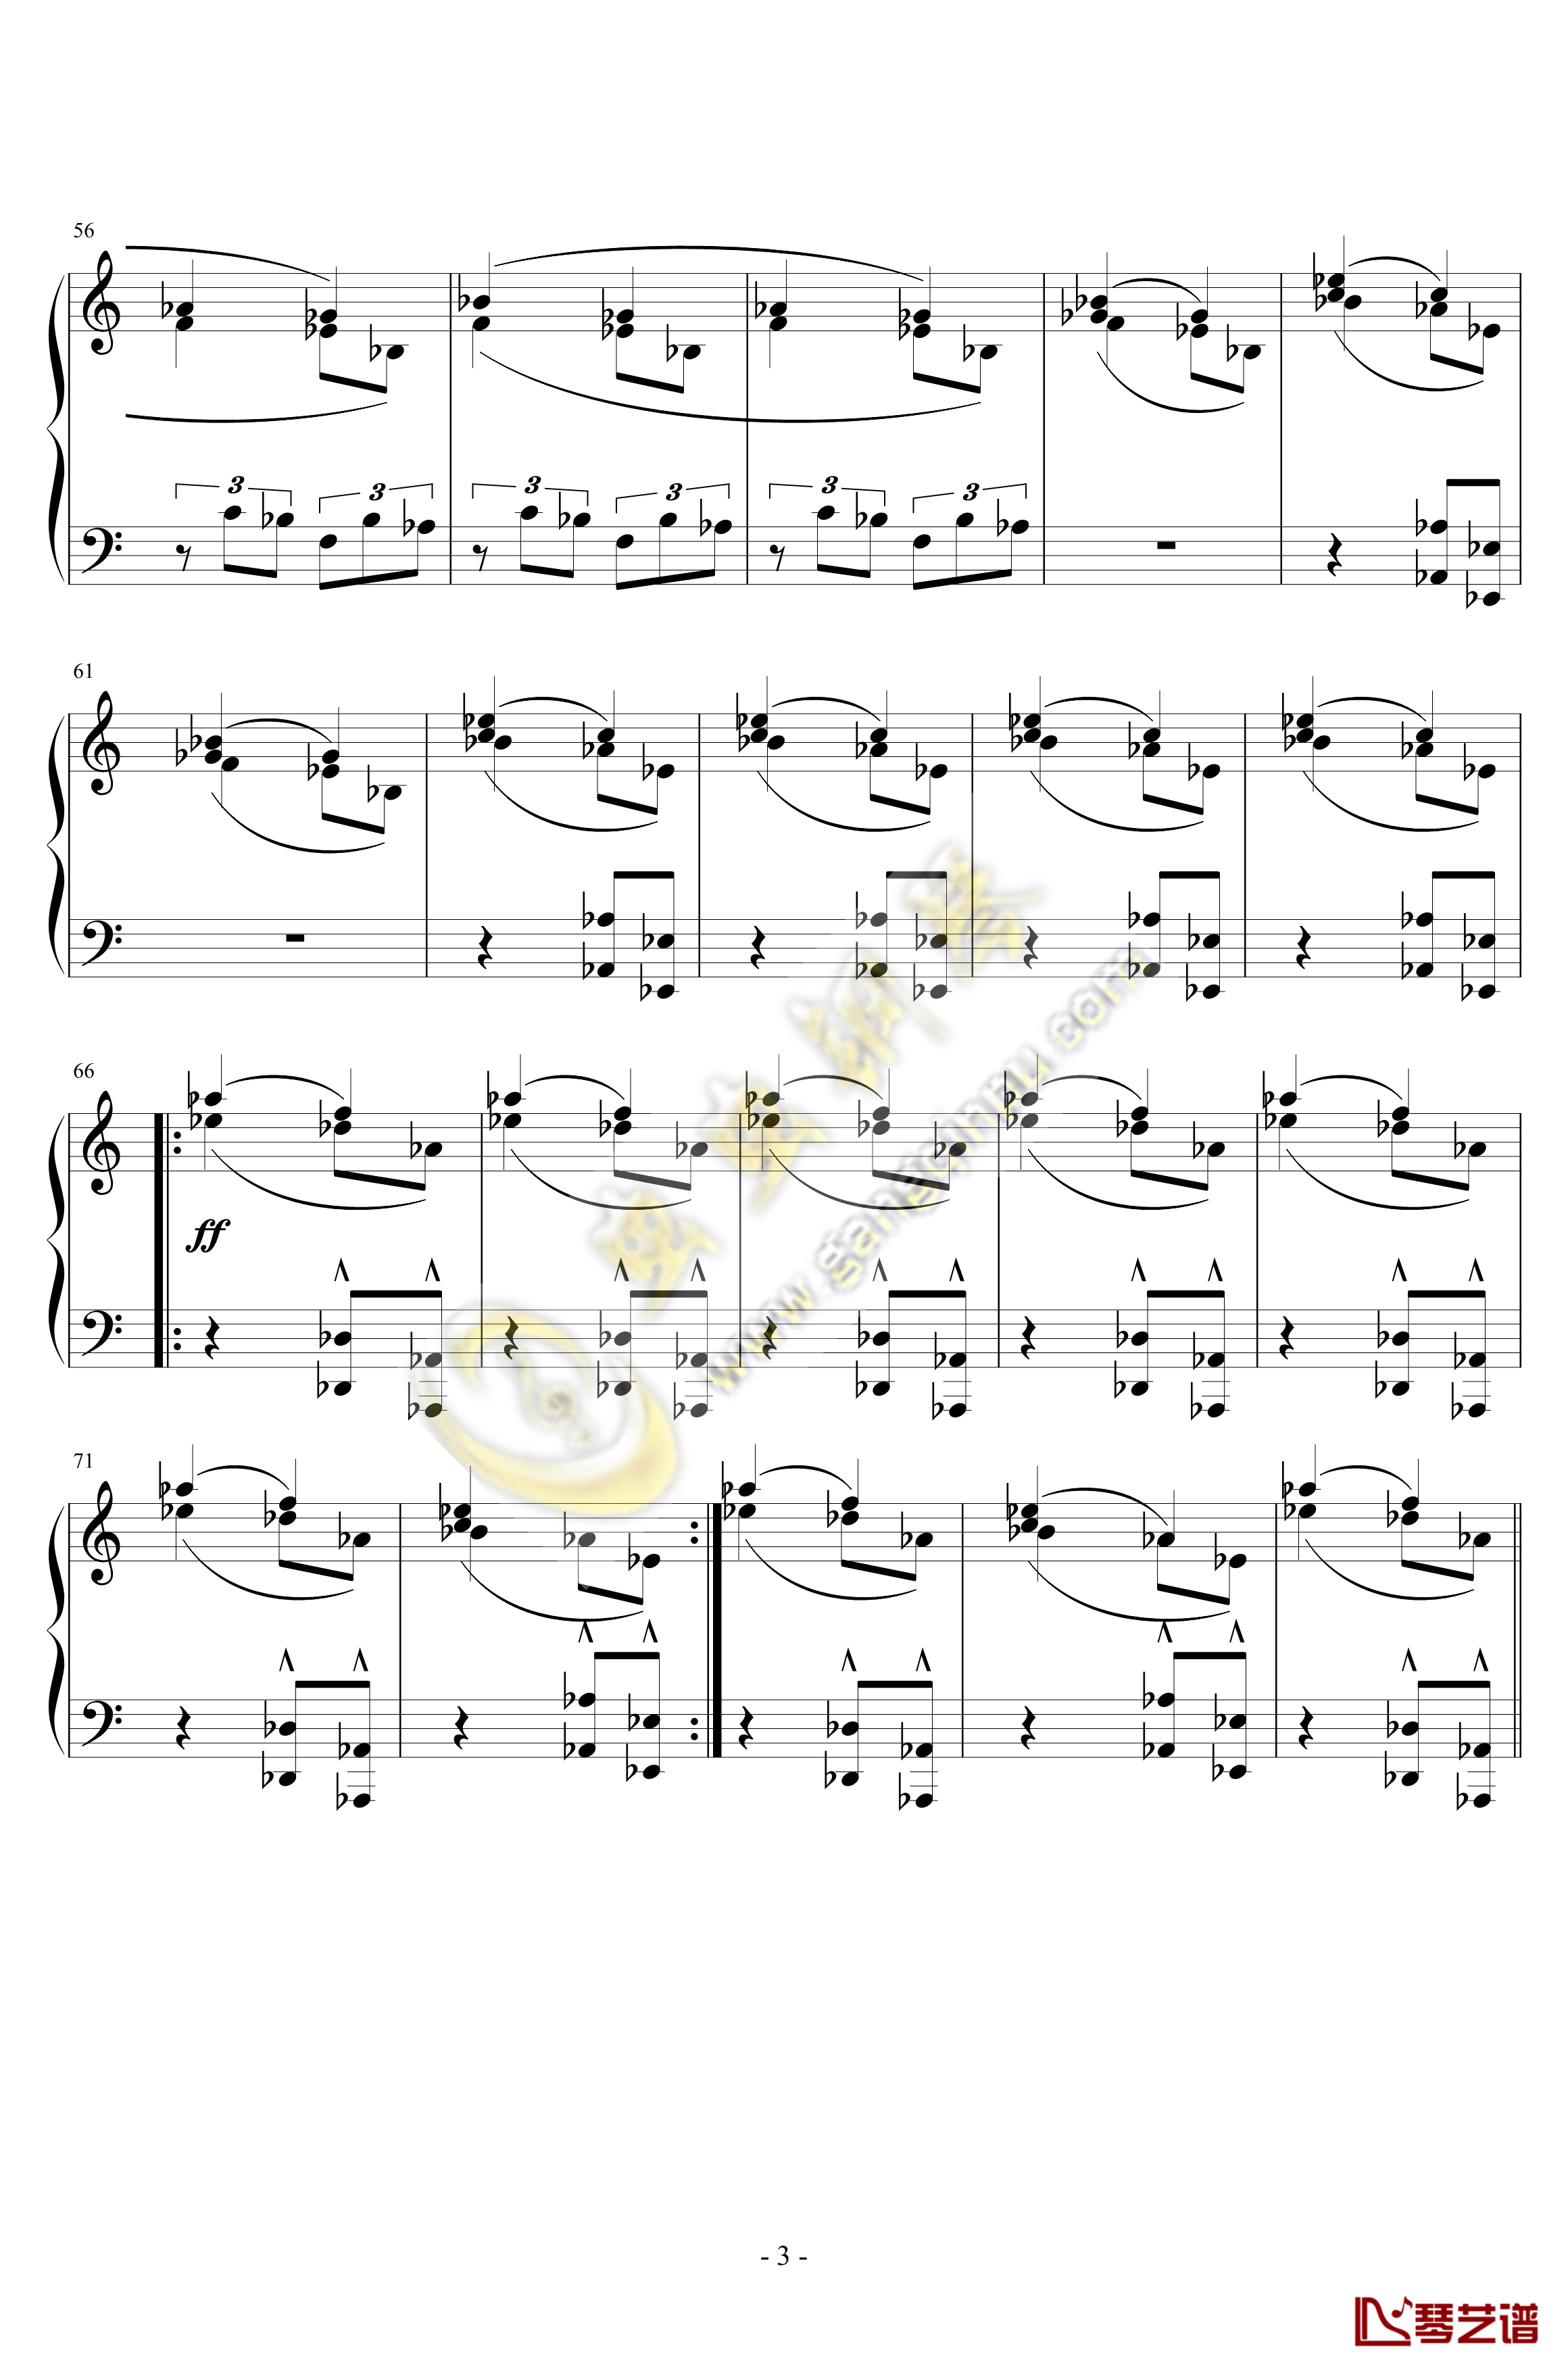 小交响曲钢琴谱-第一乐章-雅纳切克